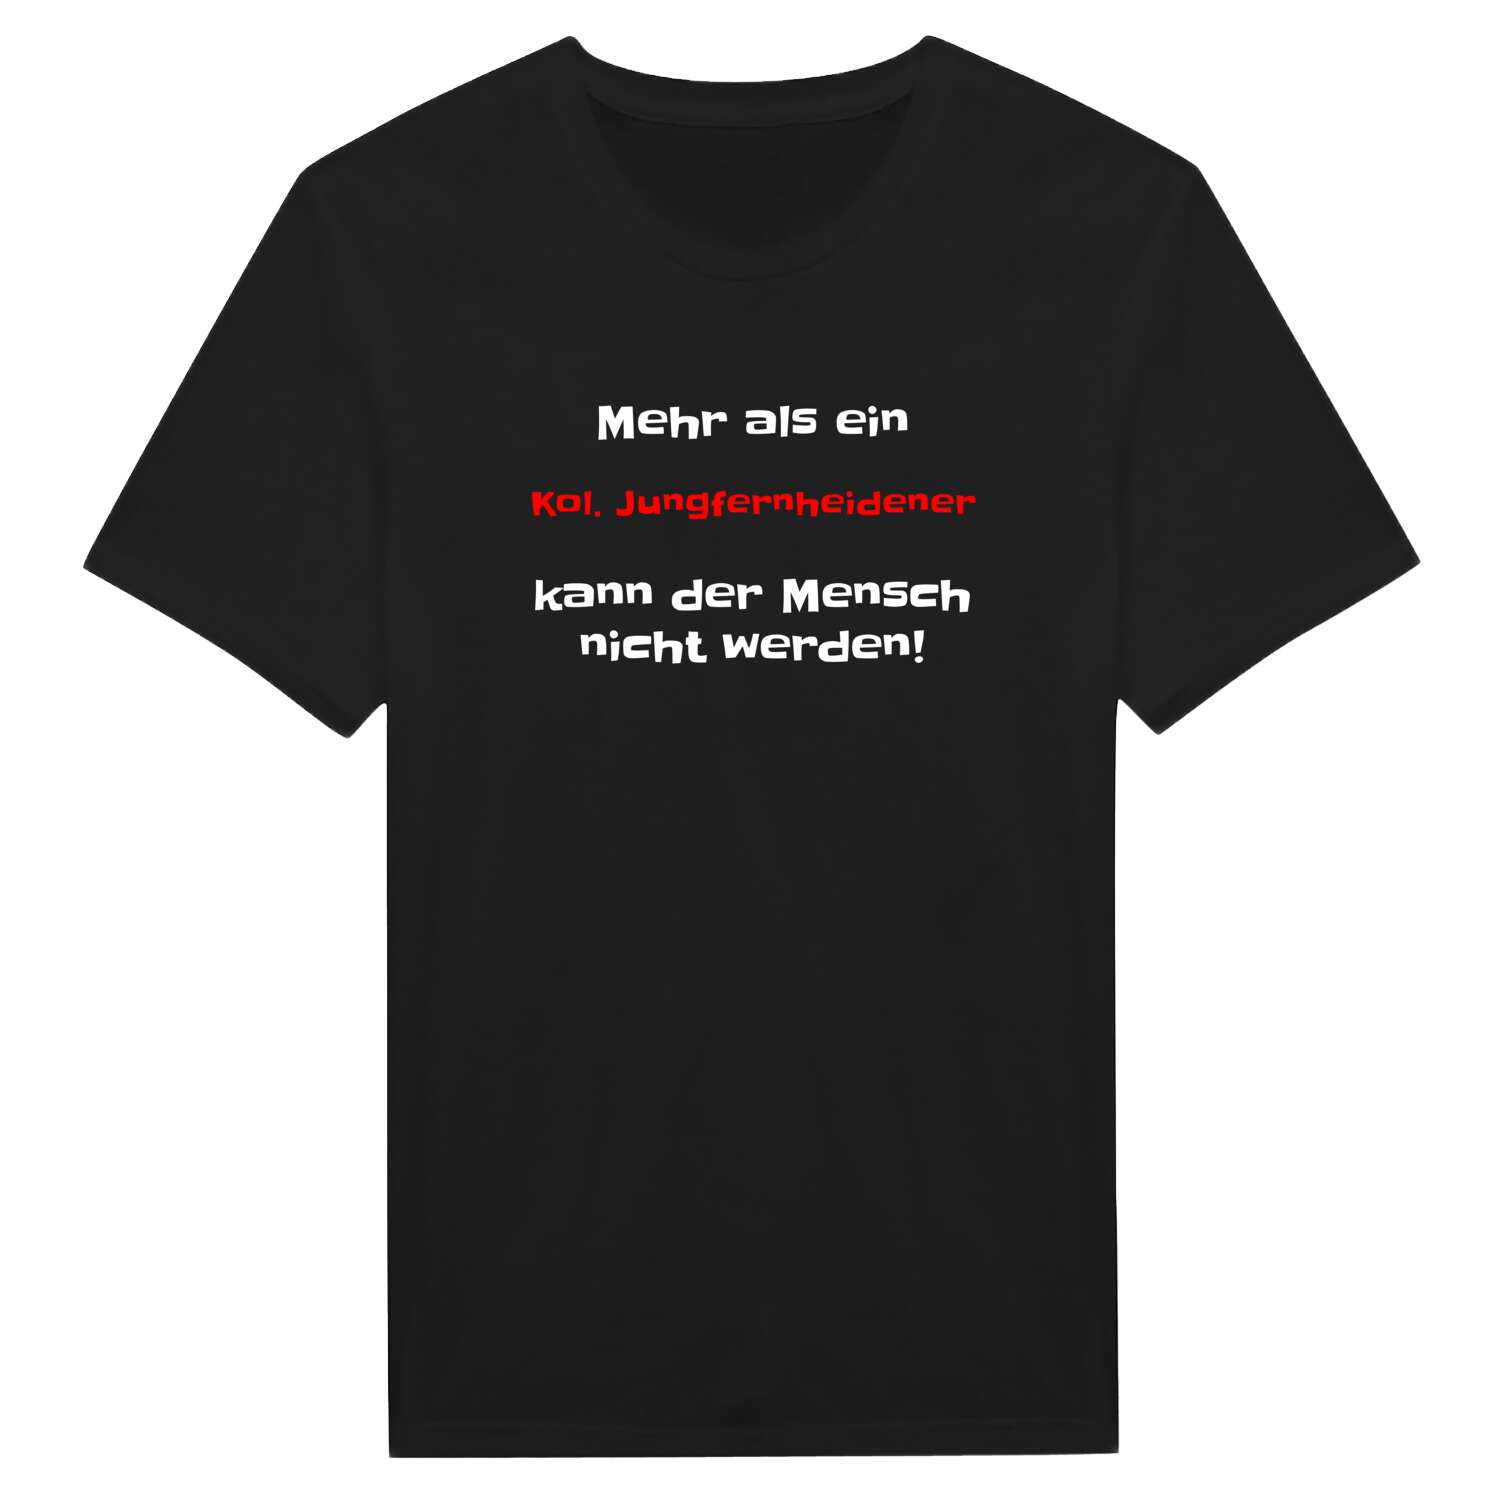 Kol. Jungfernheide T-Shirt »Mehr als ein«